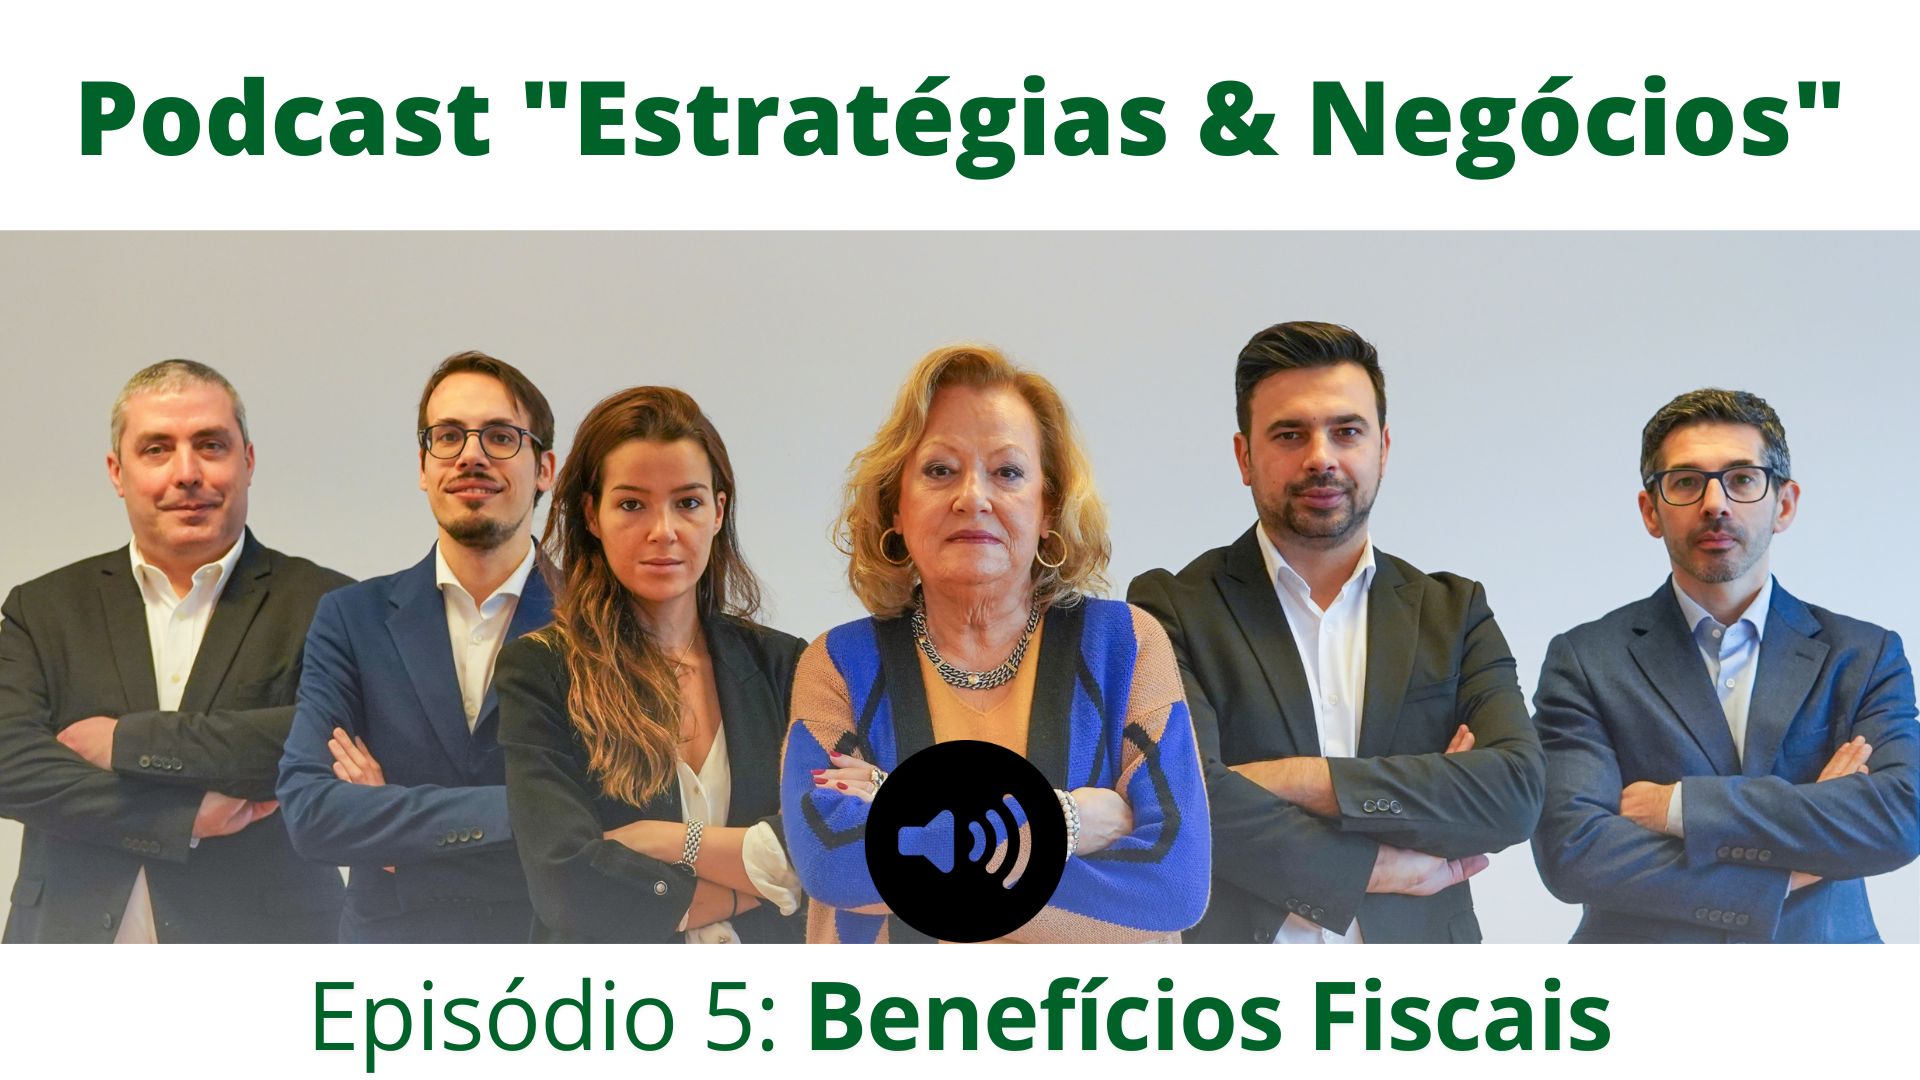 Episódio 5 do podcast Estrategor "Estratégias e Negócios" com o tema "Benefícios Fiscais"